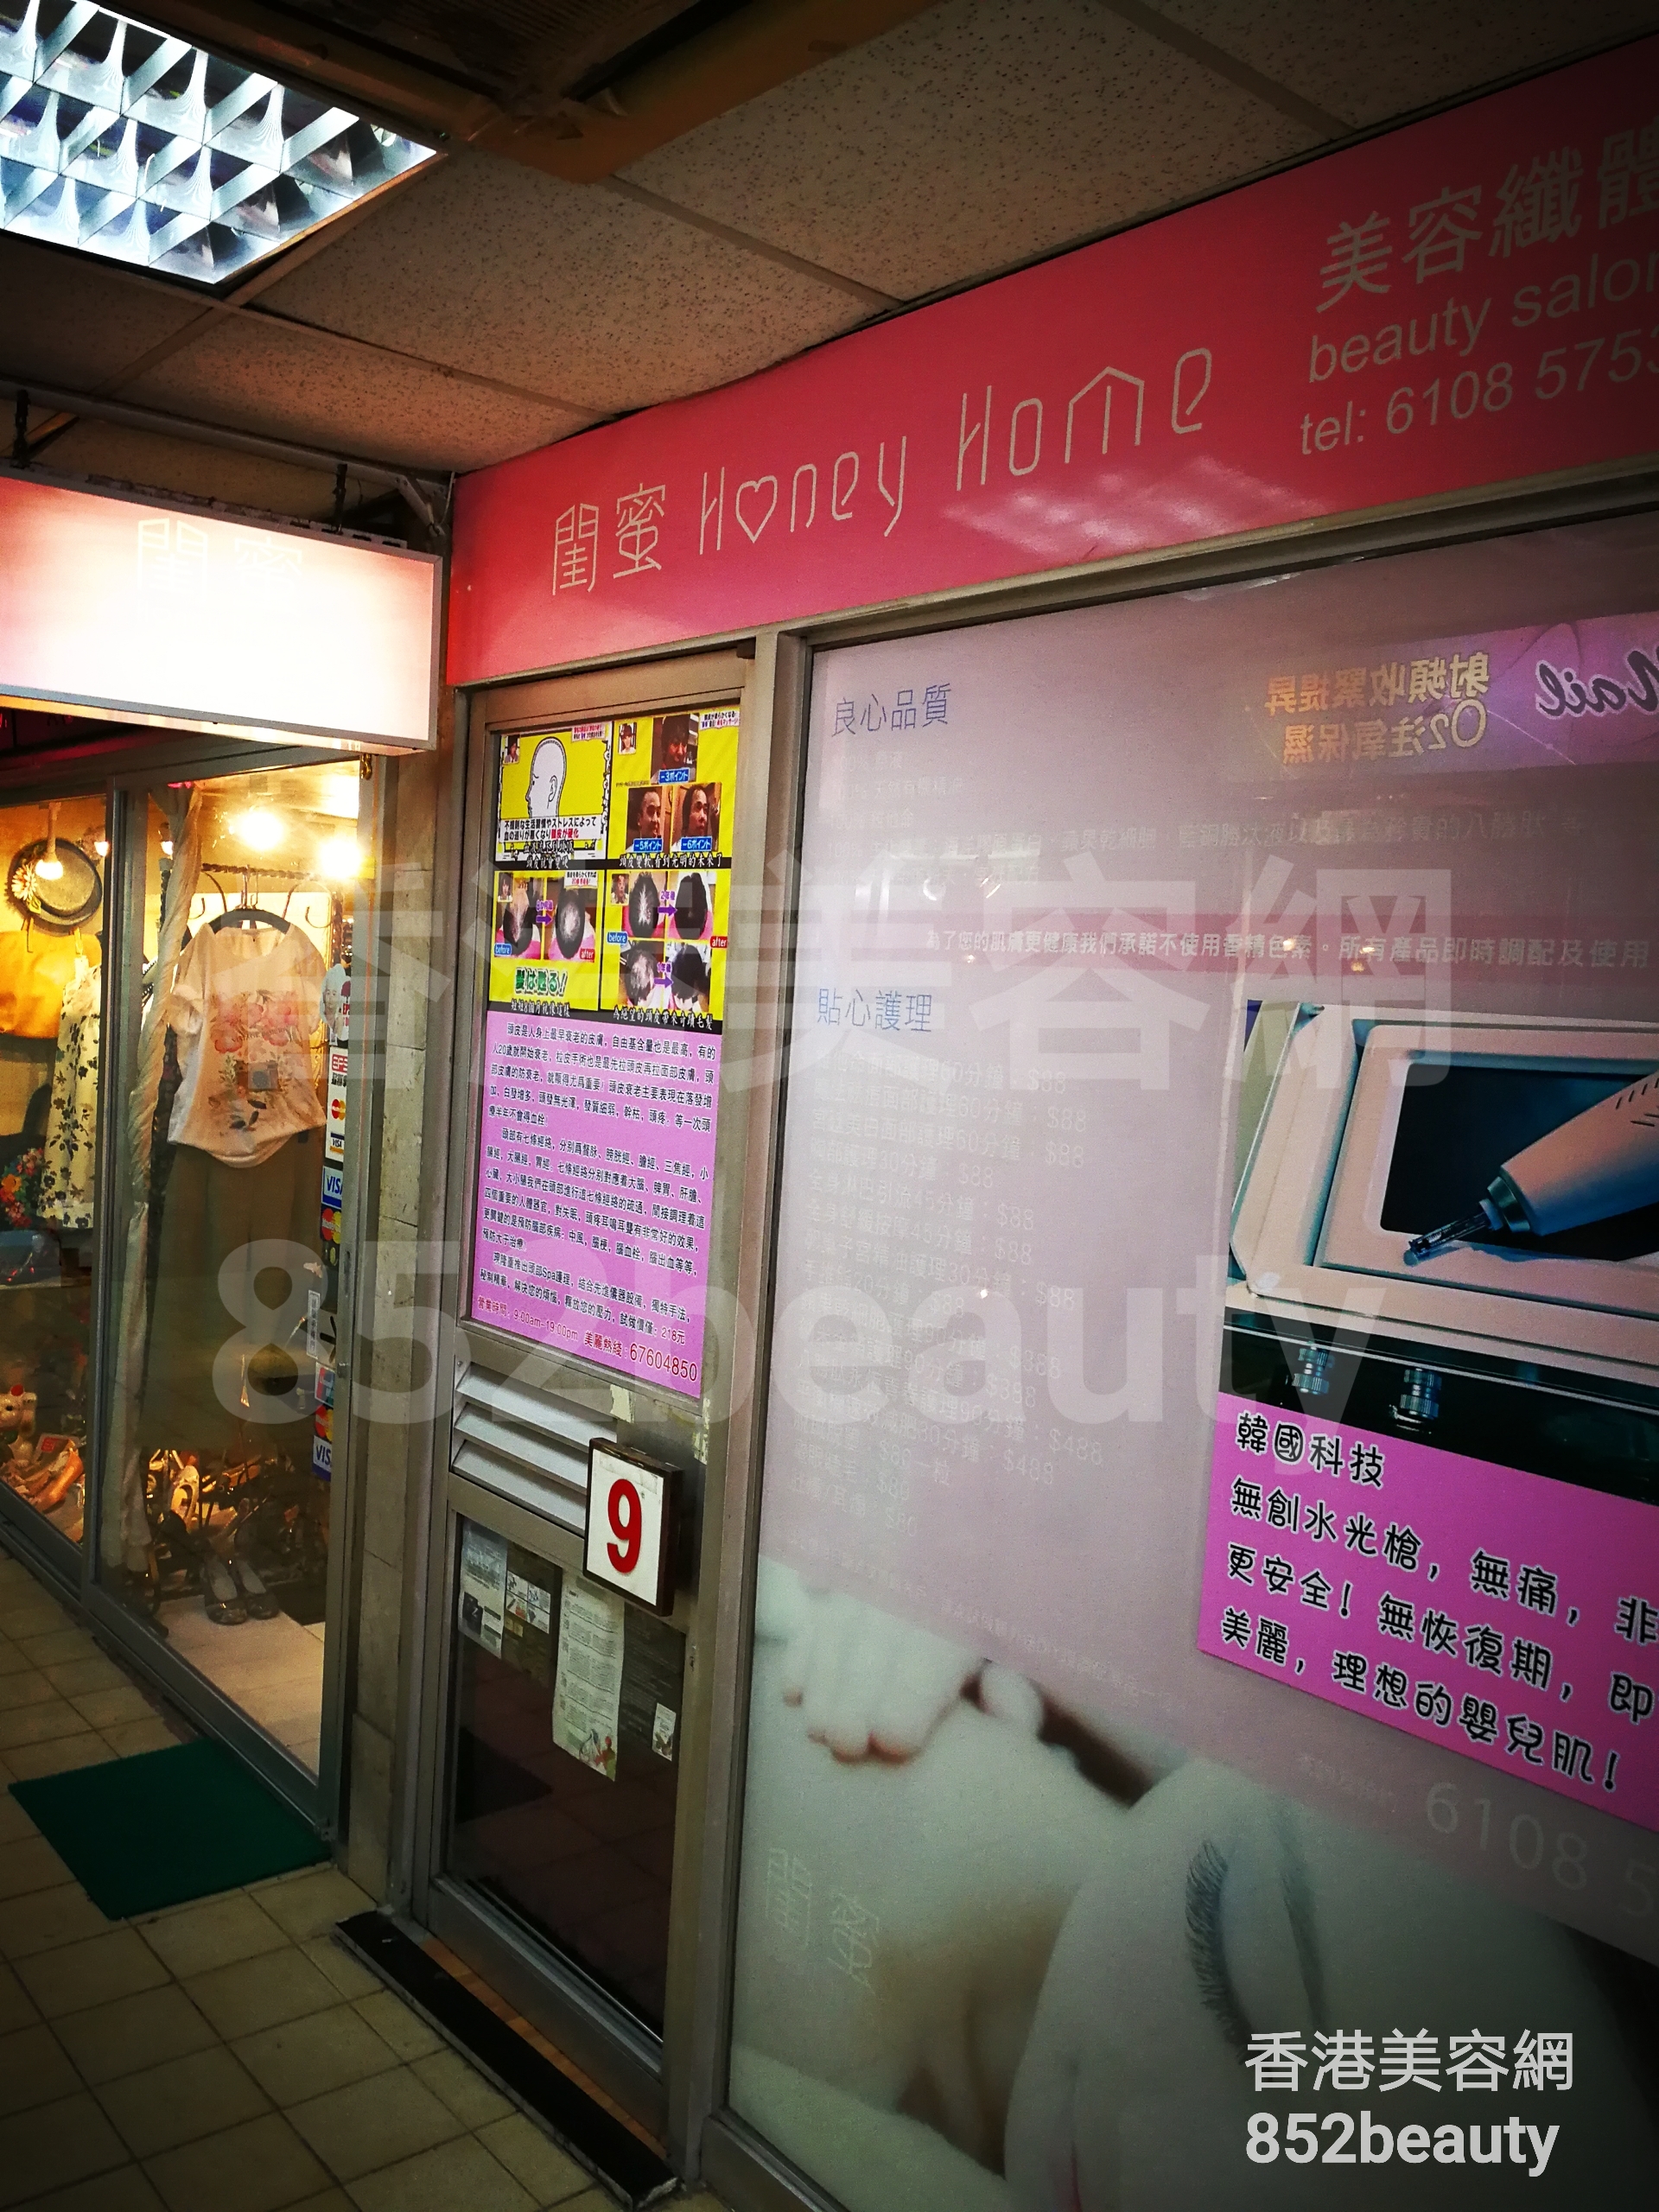 香港美容網 Hong Kong Beauty Salon 美容院 / 美容師: 閨蜜 Honey Home